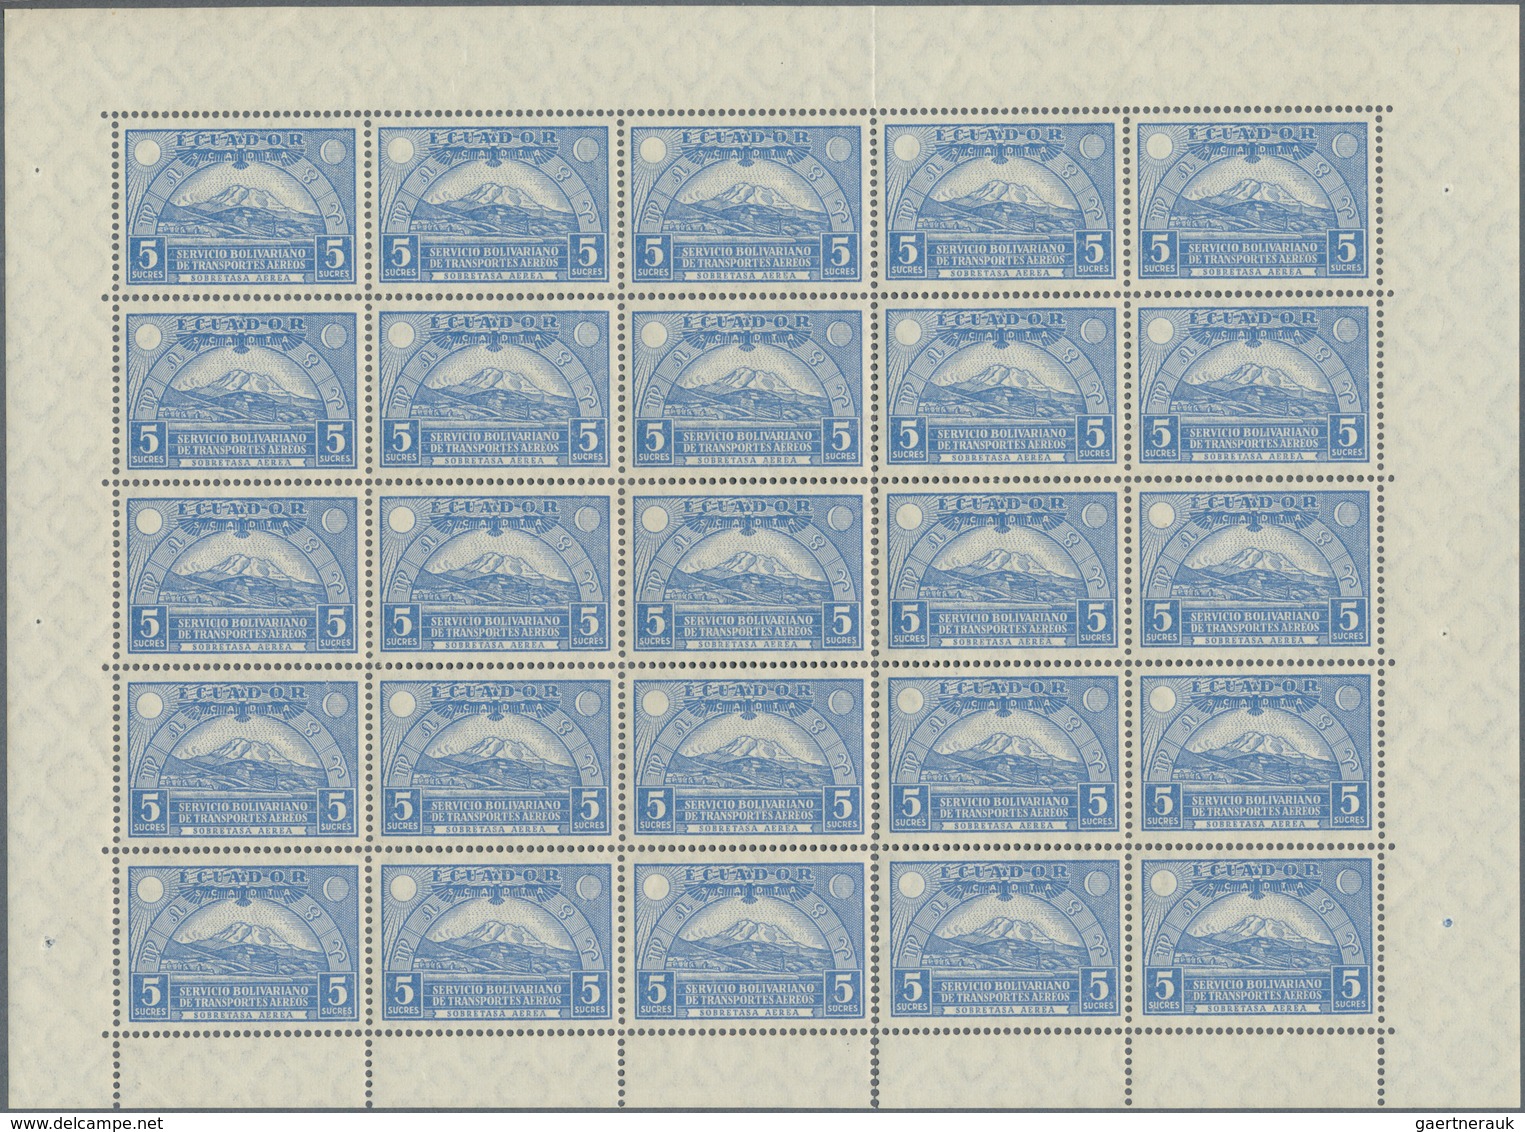 SCADTA - Ausgaben Für Ecuador: 1929, Pictorials, 5s. Ultramarine, 86 Stamps Within Units, Unmounted - Ecuador